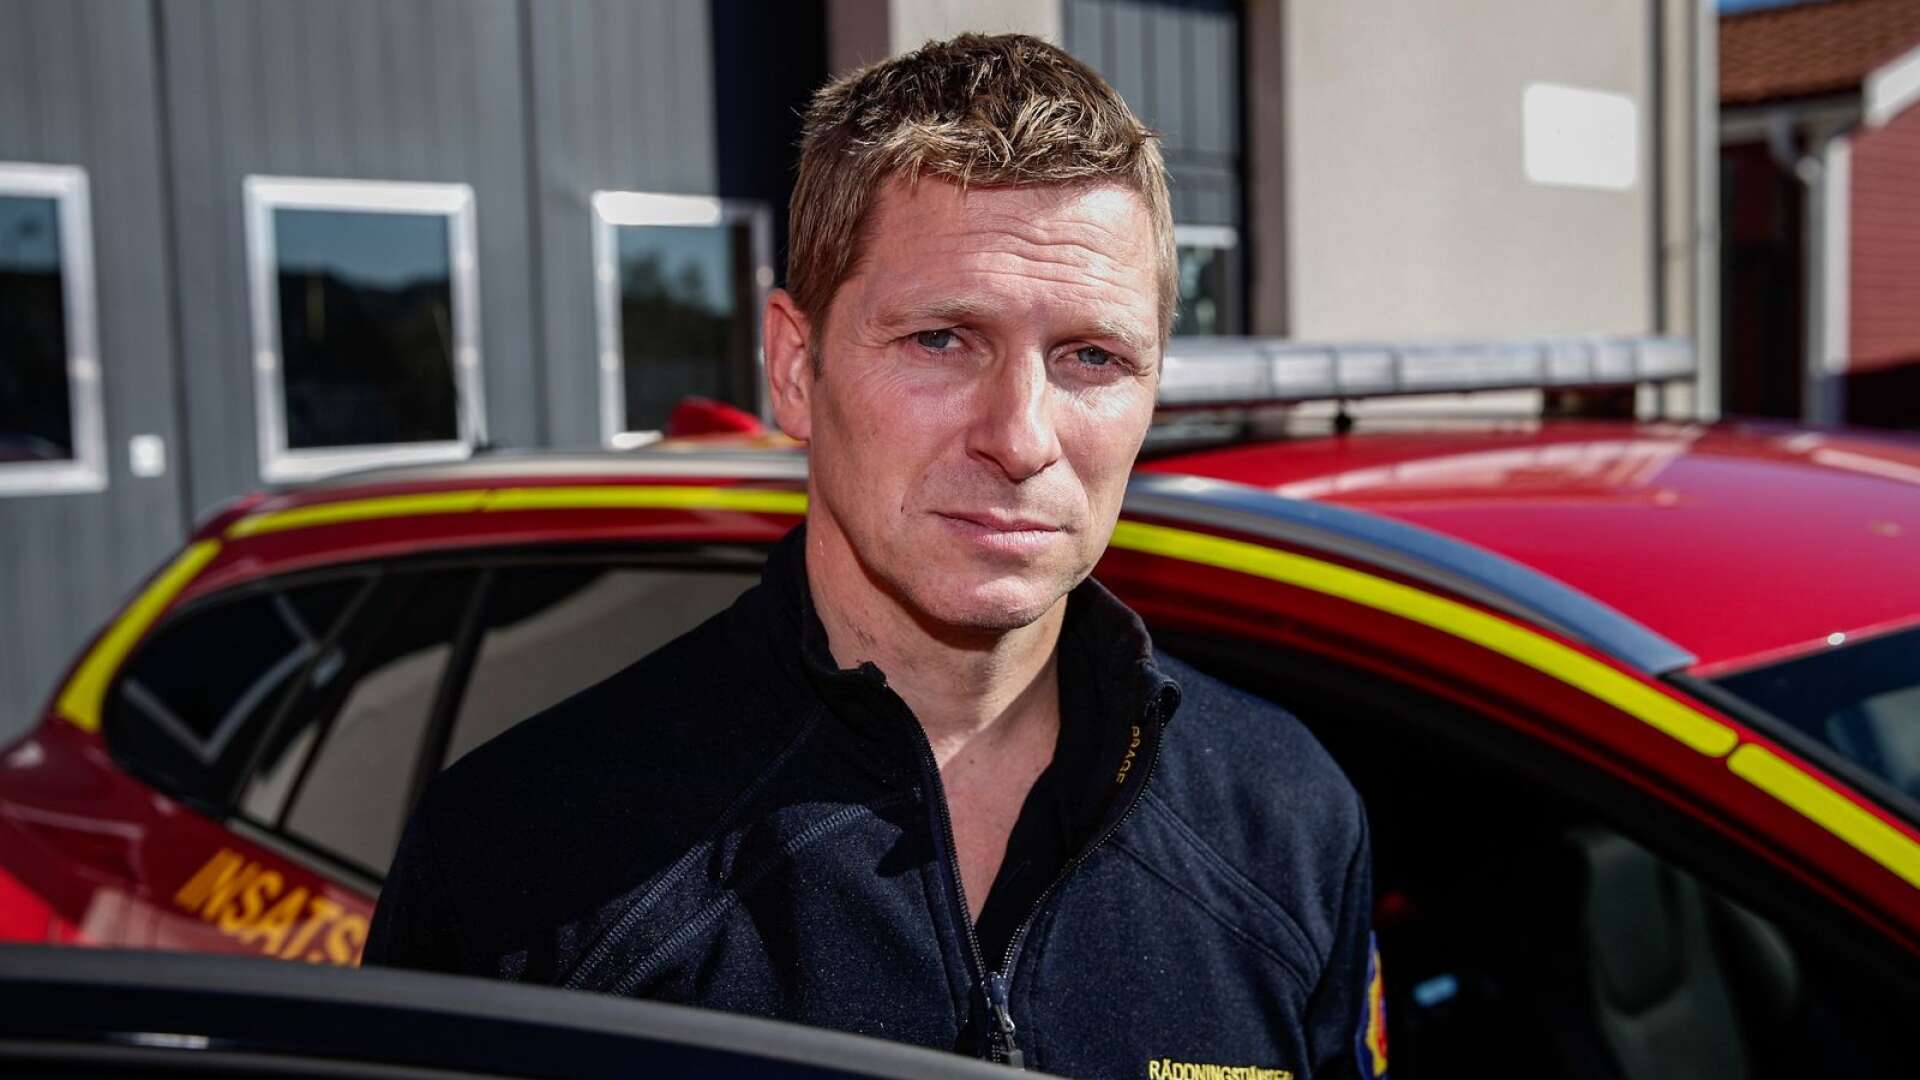 Peter Bergström, räddningschef i Sunne och Torsby, var räddningsledare under söndagens dödsolycka.